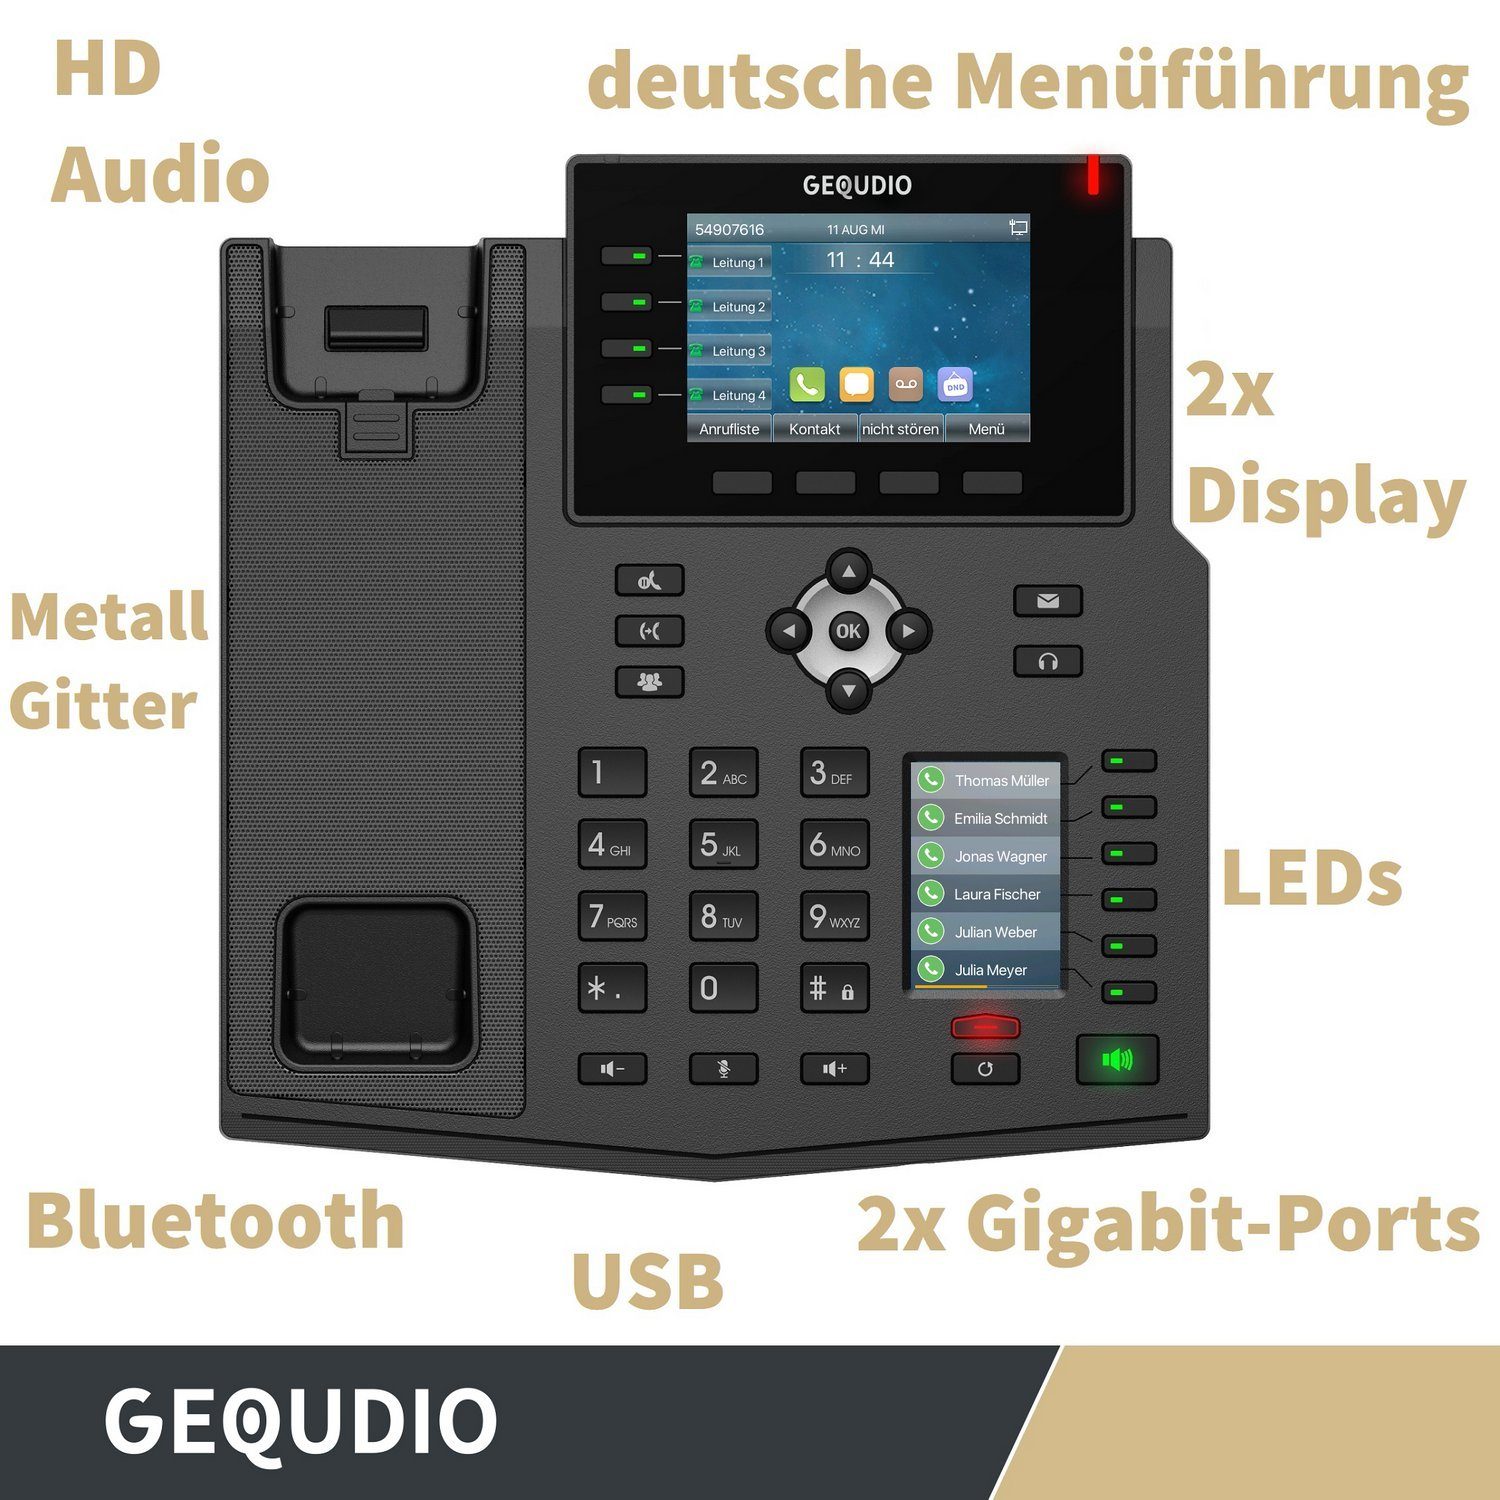 GEQUDIO Headset